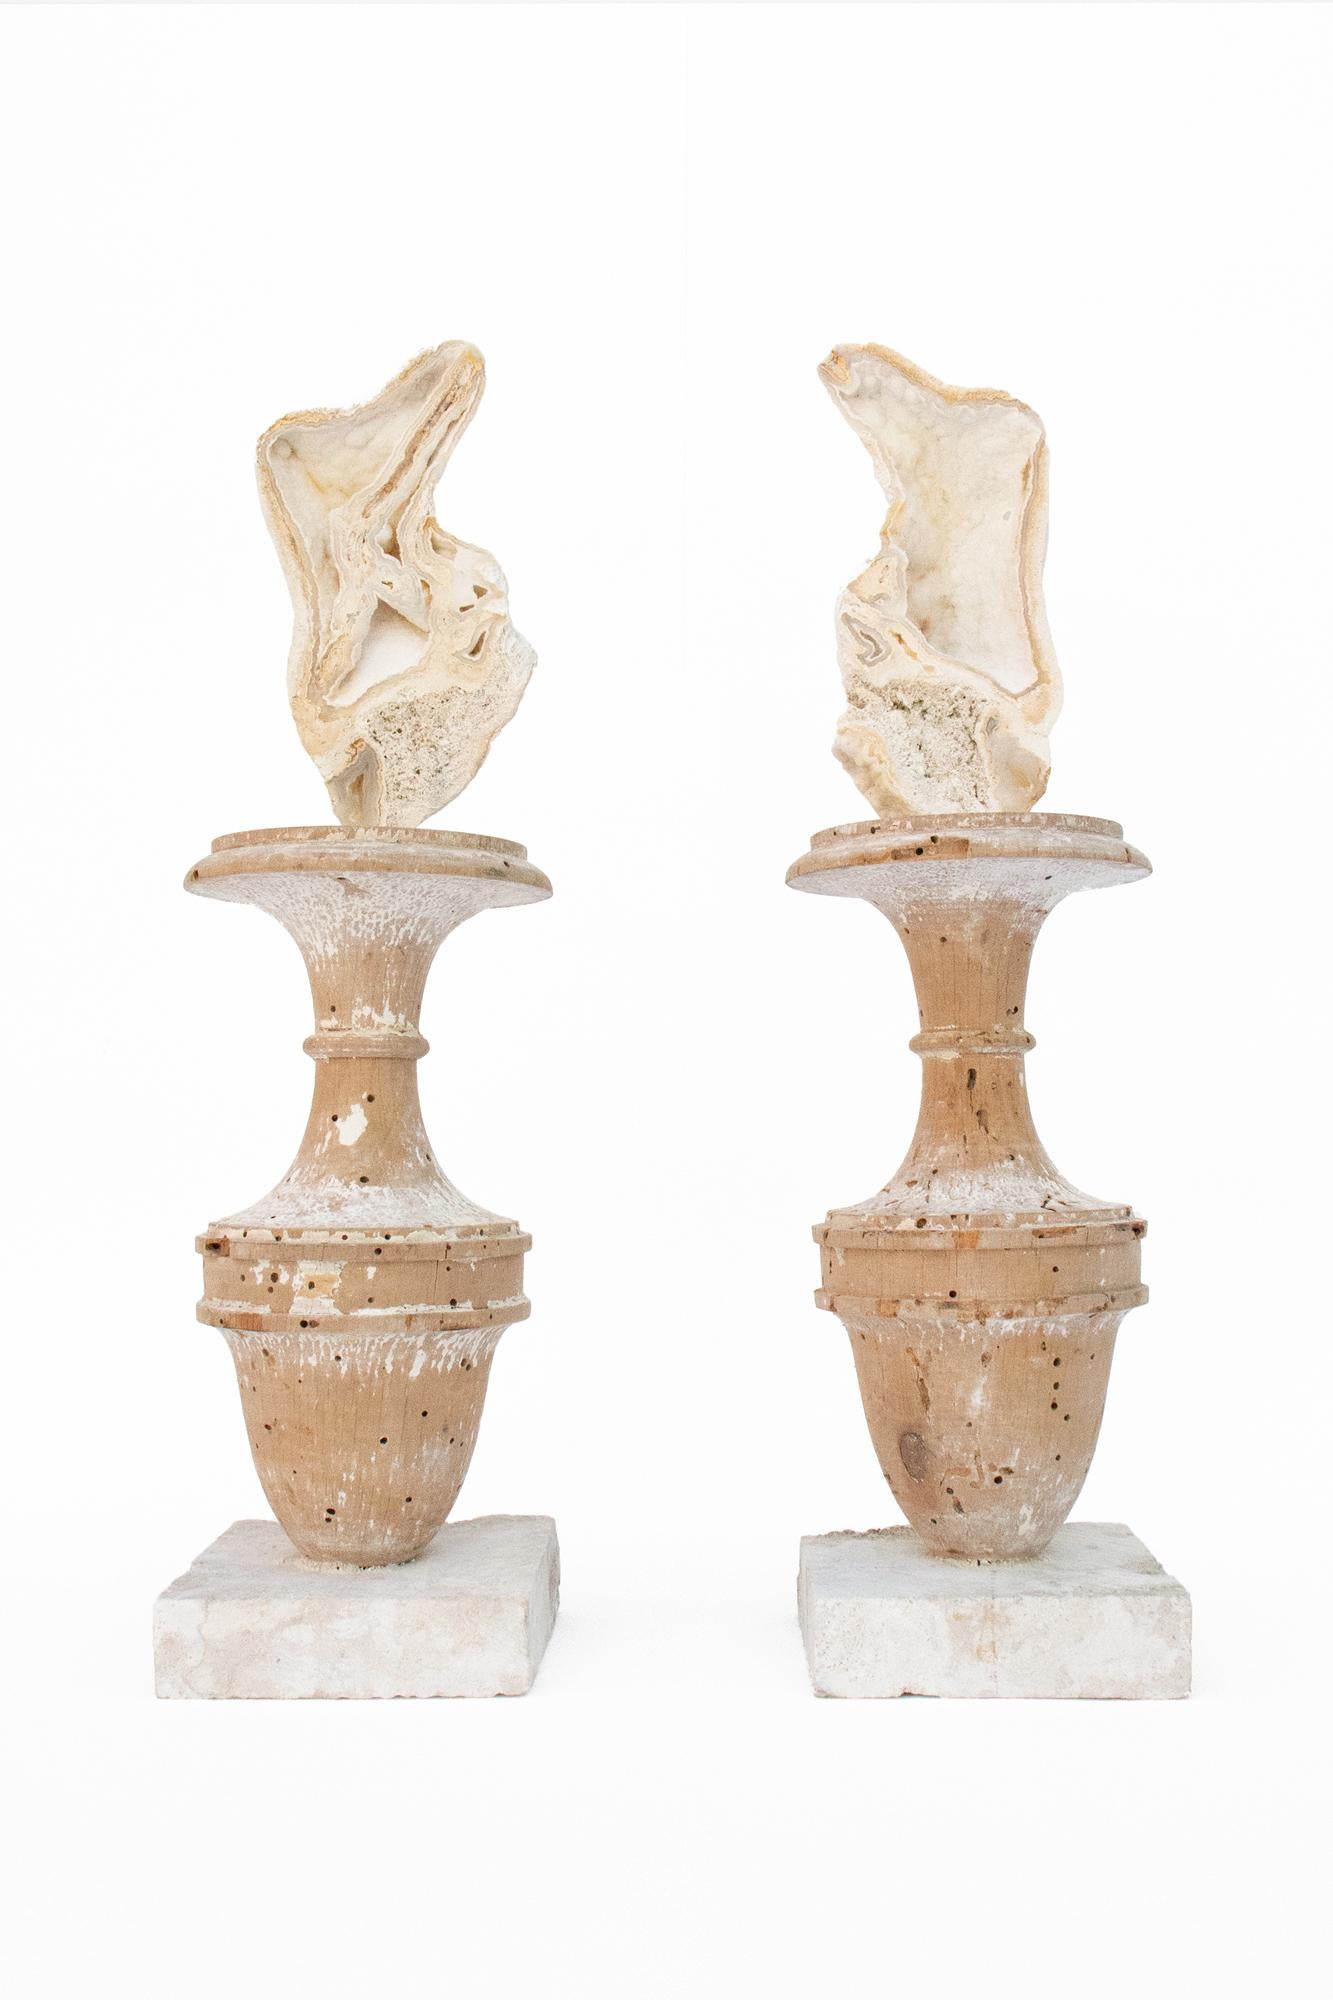 Paire de vases italiens du XVIIe siècle en fragments, décorés de corail agate fossile sur des bases en corail de roche taillée.

La paire provient d'une église de Florence. Ils ont été trouvés et sauvés de la crue historique du fleuve Arno en 1966.